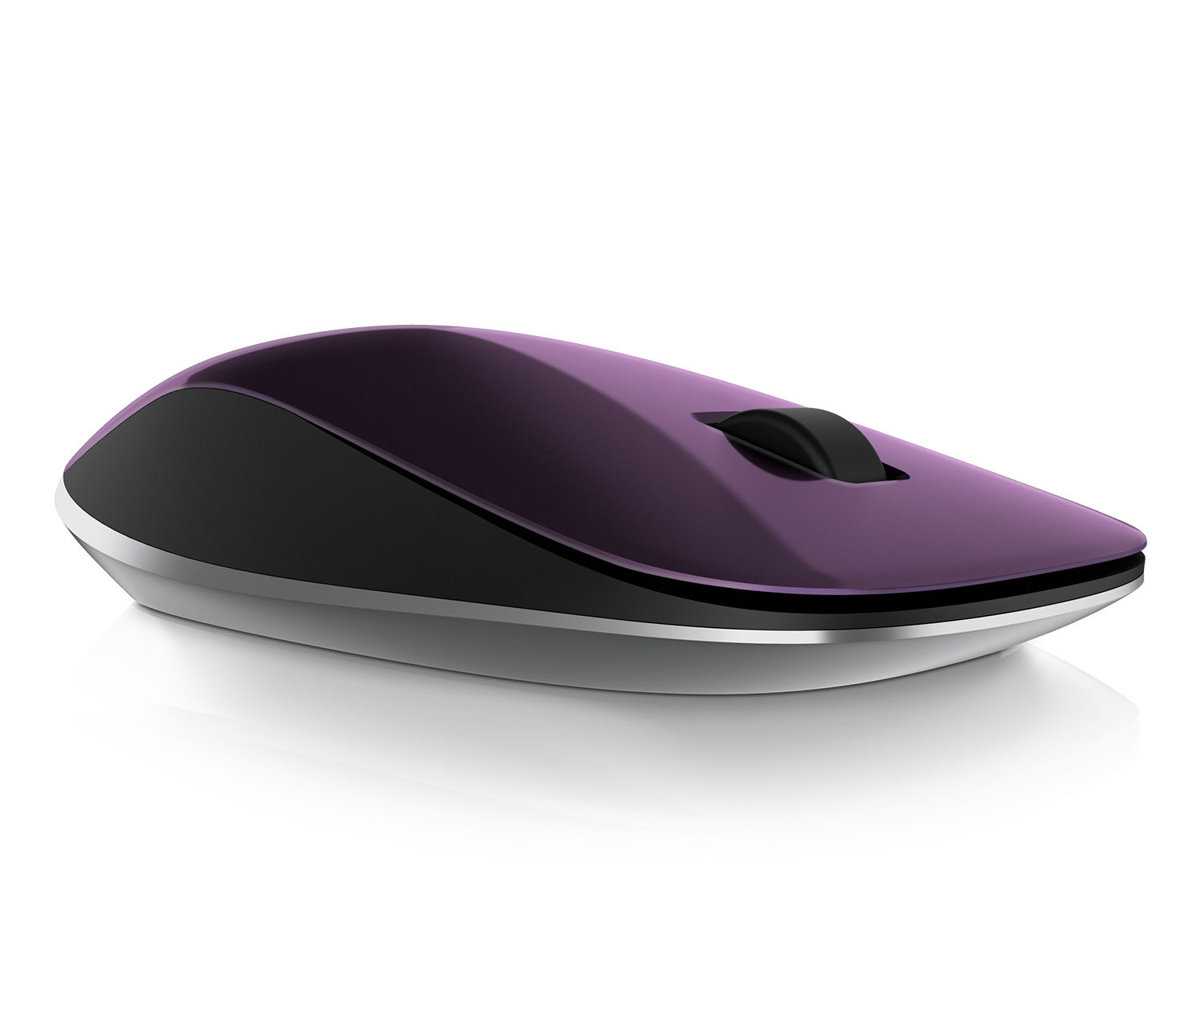 Клавиатура мышь комплект HP Z4000 mouse E8H26AA Purple USB - подробные характеристики обзоры видео фото Цены в интернет-магазинах где можно купить клавиатуру мышь комплект HP Z4000 mouse E8H26AA Purple USB